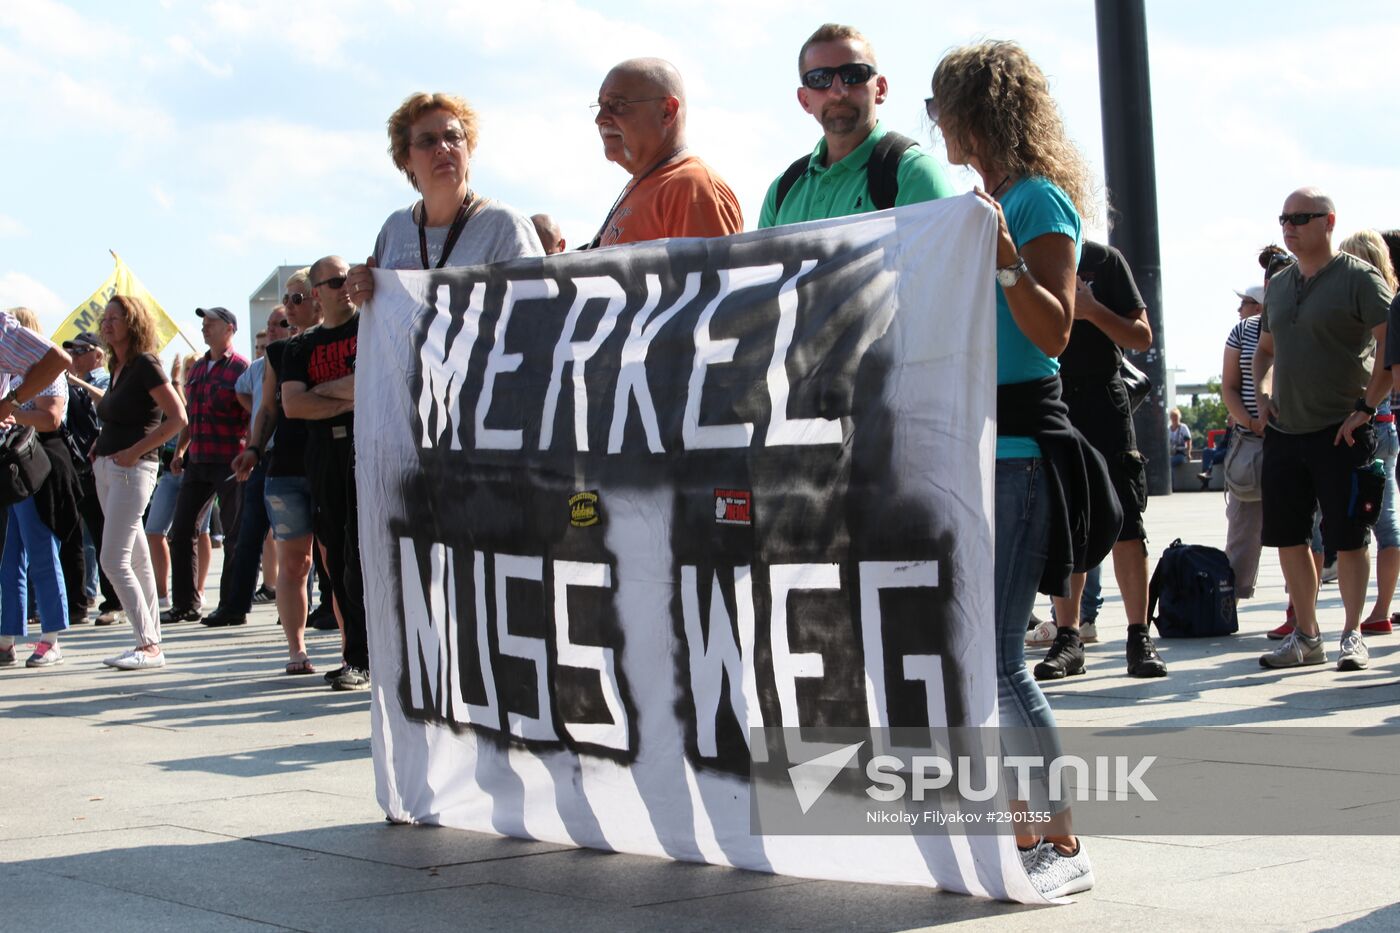 Protests in Berlin against Angela Merkel policies